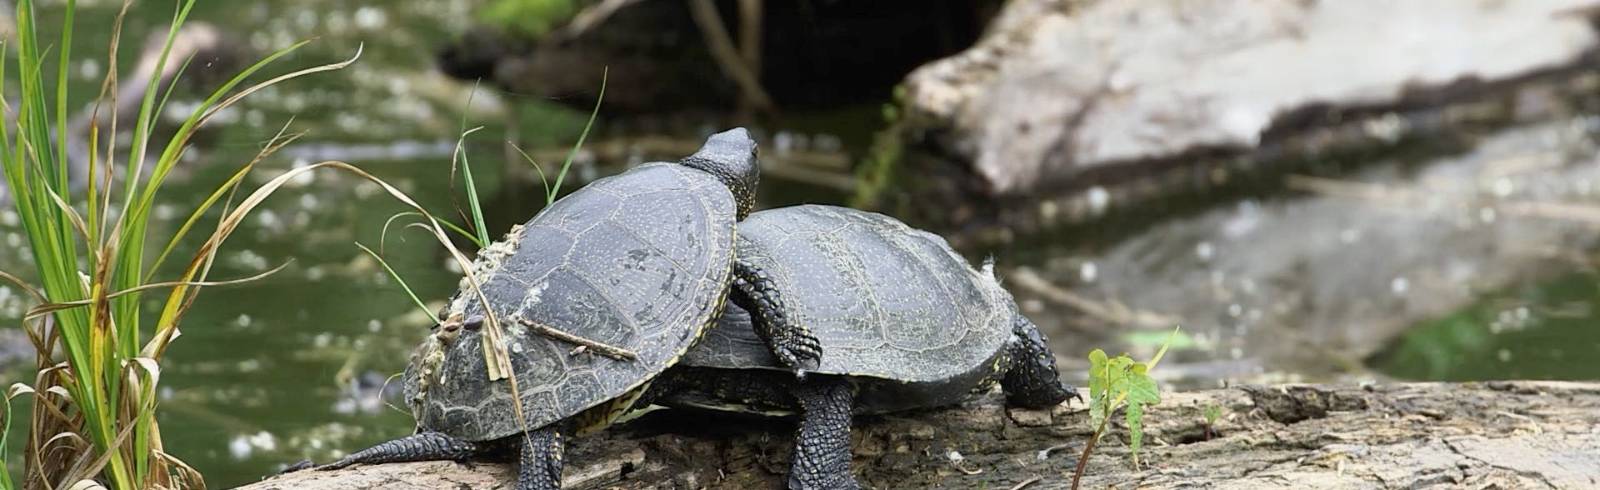 Nachwuchs bei bedrohter Schildkröten-Art